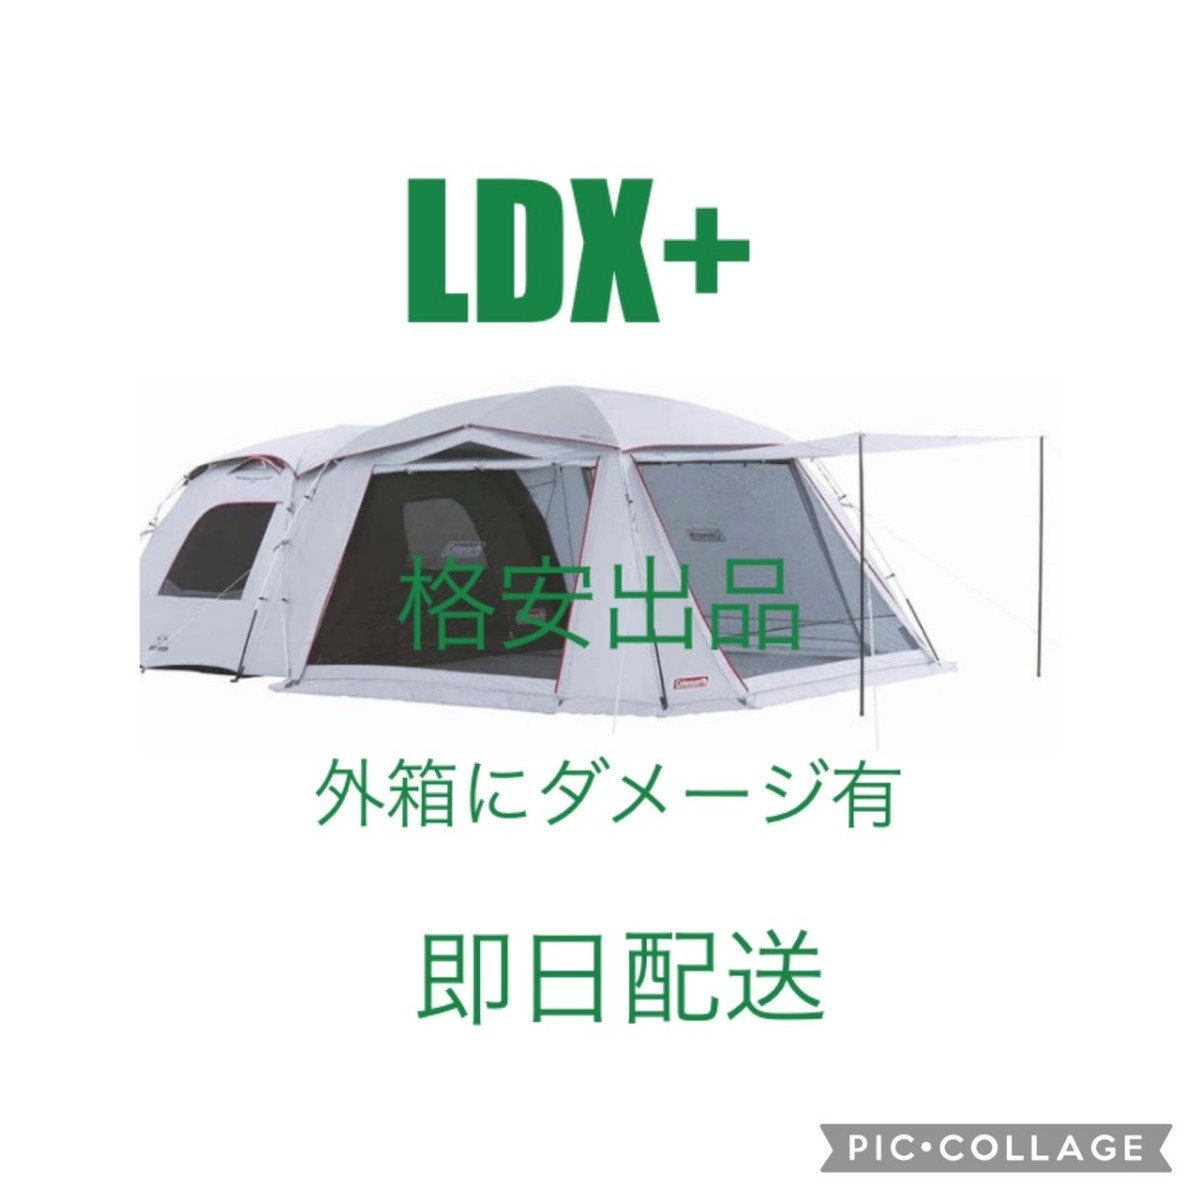 タフスクリーン2ルームハウス/LDX+